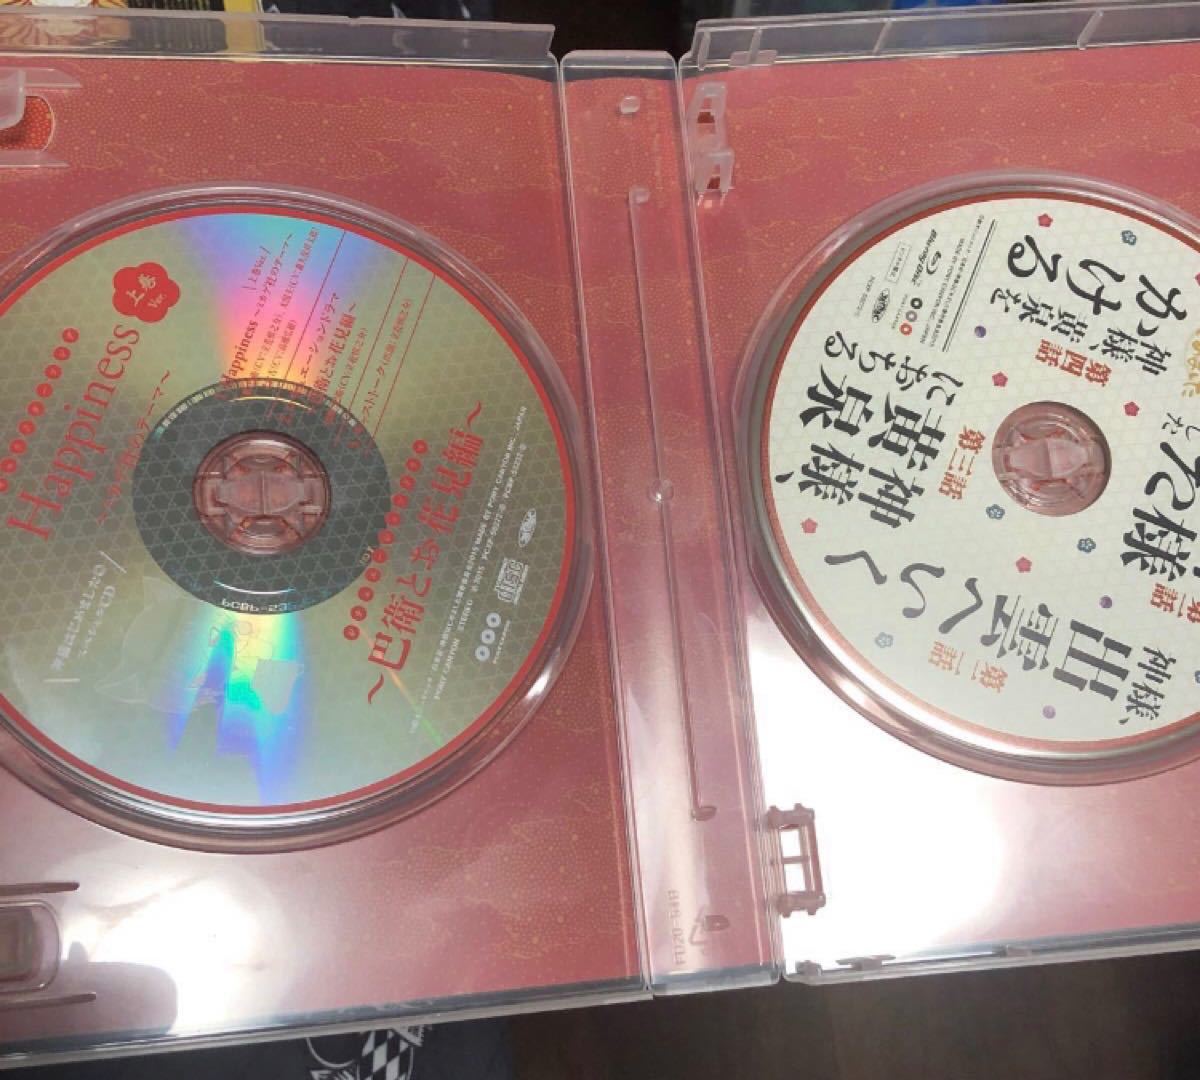 神様はじめました 2期 上巻 ブルーレイ BluRay CD 神様はじめました◎ 初回限定盤 初回版 神はじ DVD